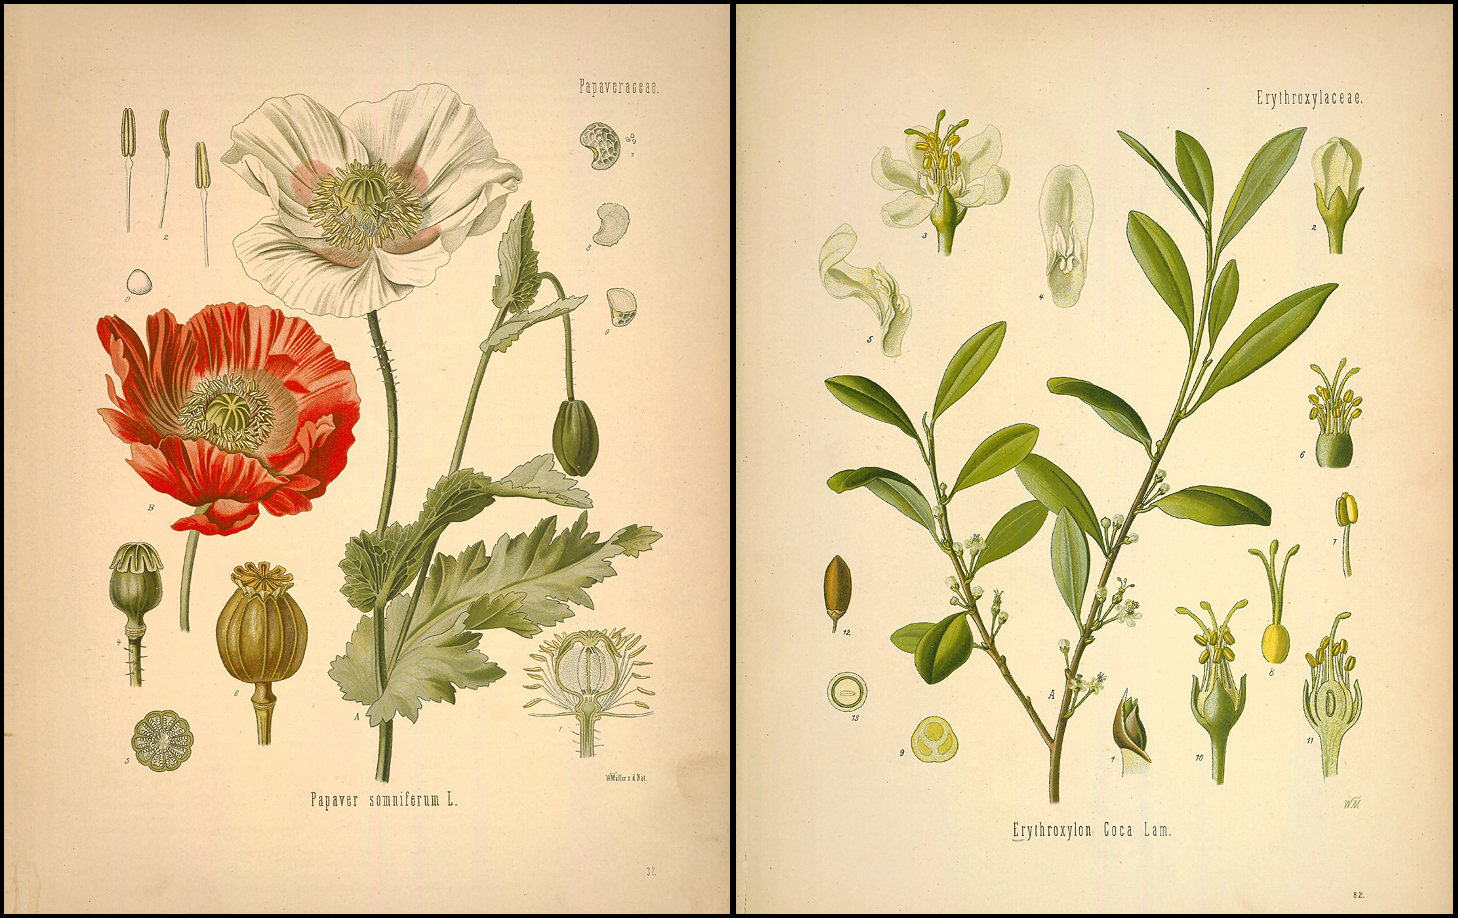 Ilustraciones en «Medizinal Pflanzen» de la «Papaver somnifer», de la que se extrae la morfina (precursor de la heroína) y de la «Erythroxylum coca», de la que se extrae la cocaína.